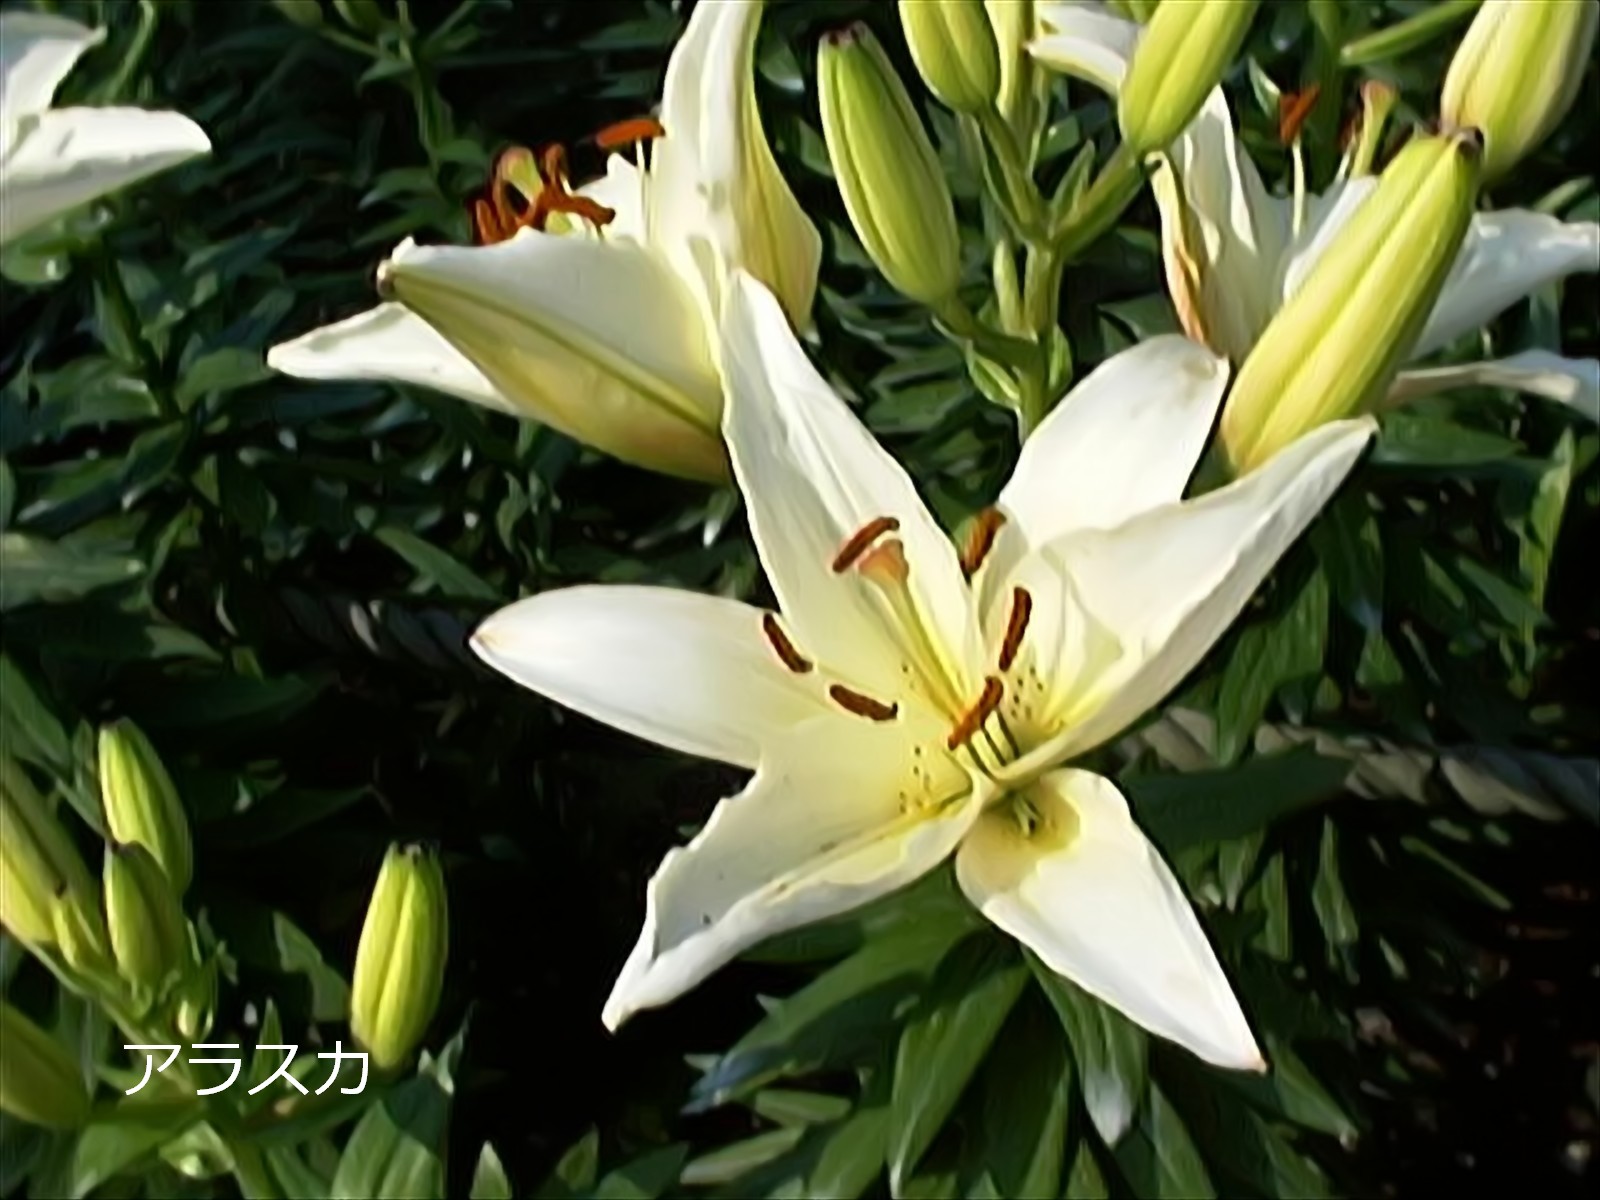 平成緑花 アルナ中 3㎜ 百合の花 白色 飾りプレート - 車内アクセサリー